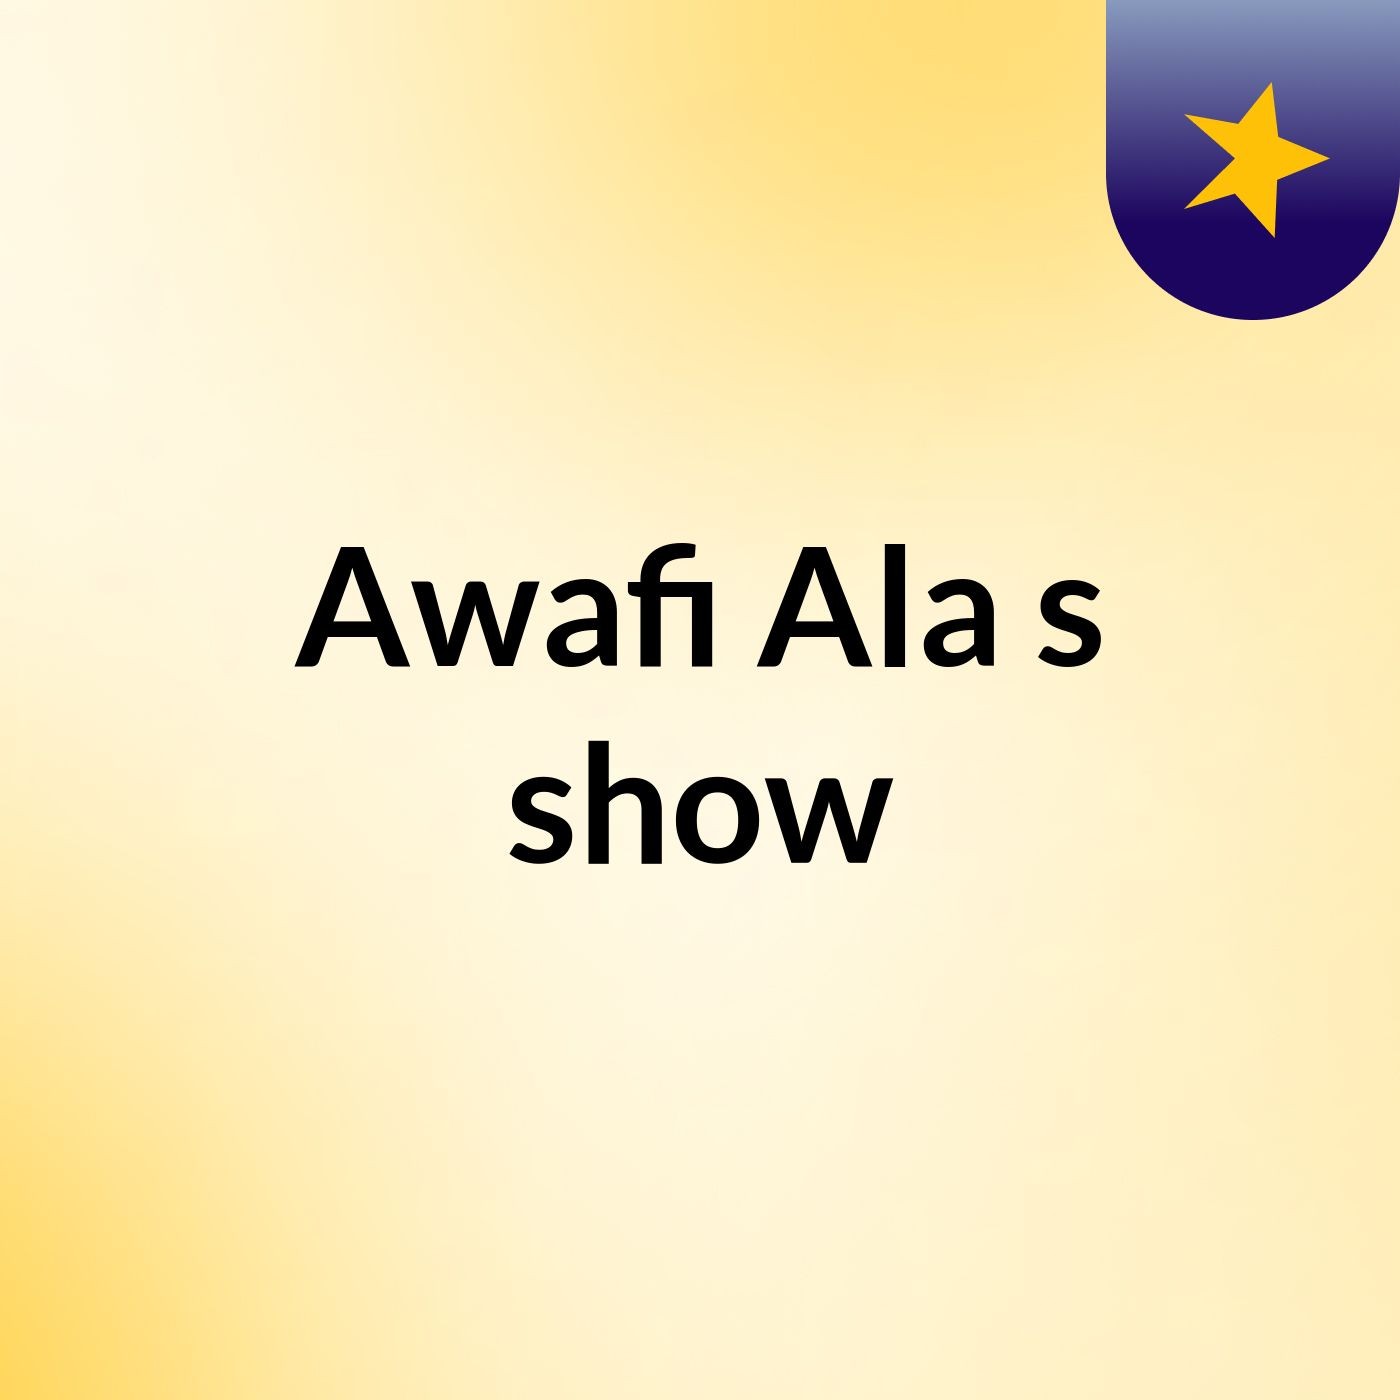 Awafi Ala's show